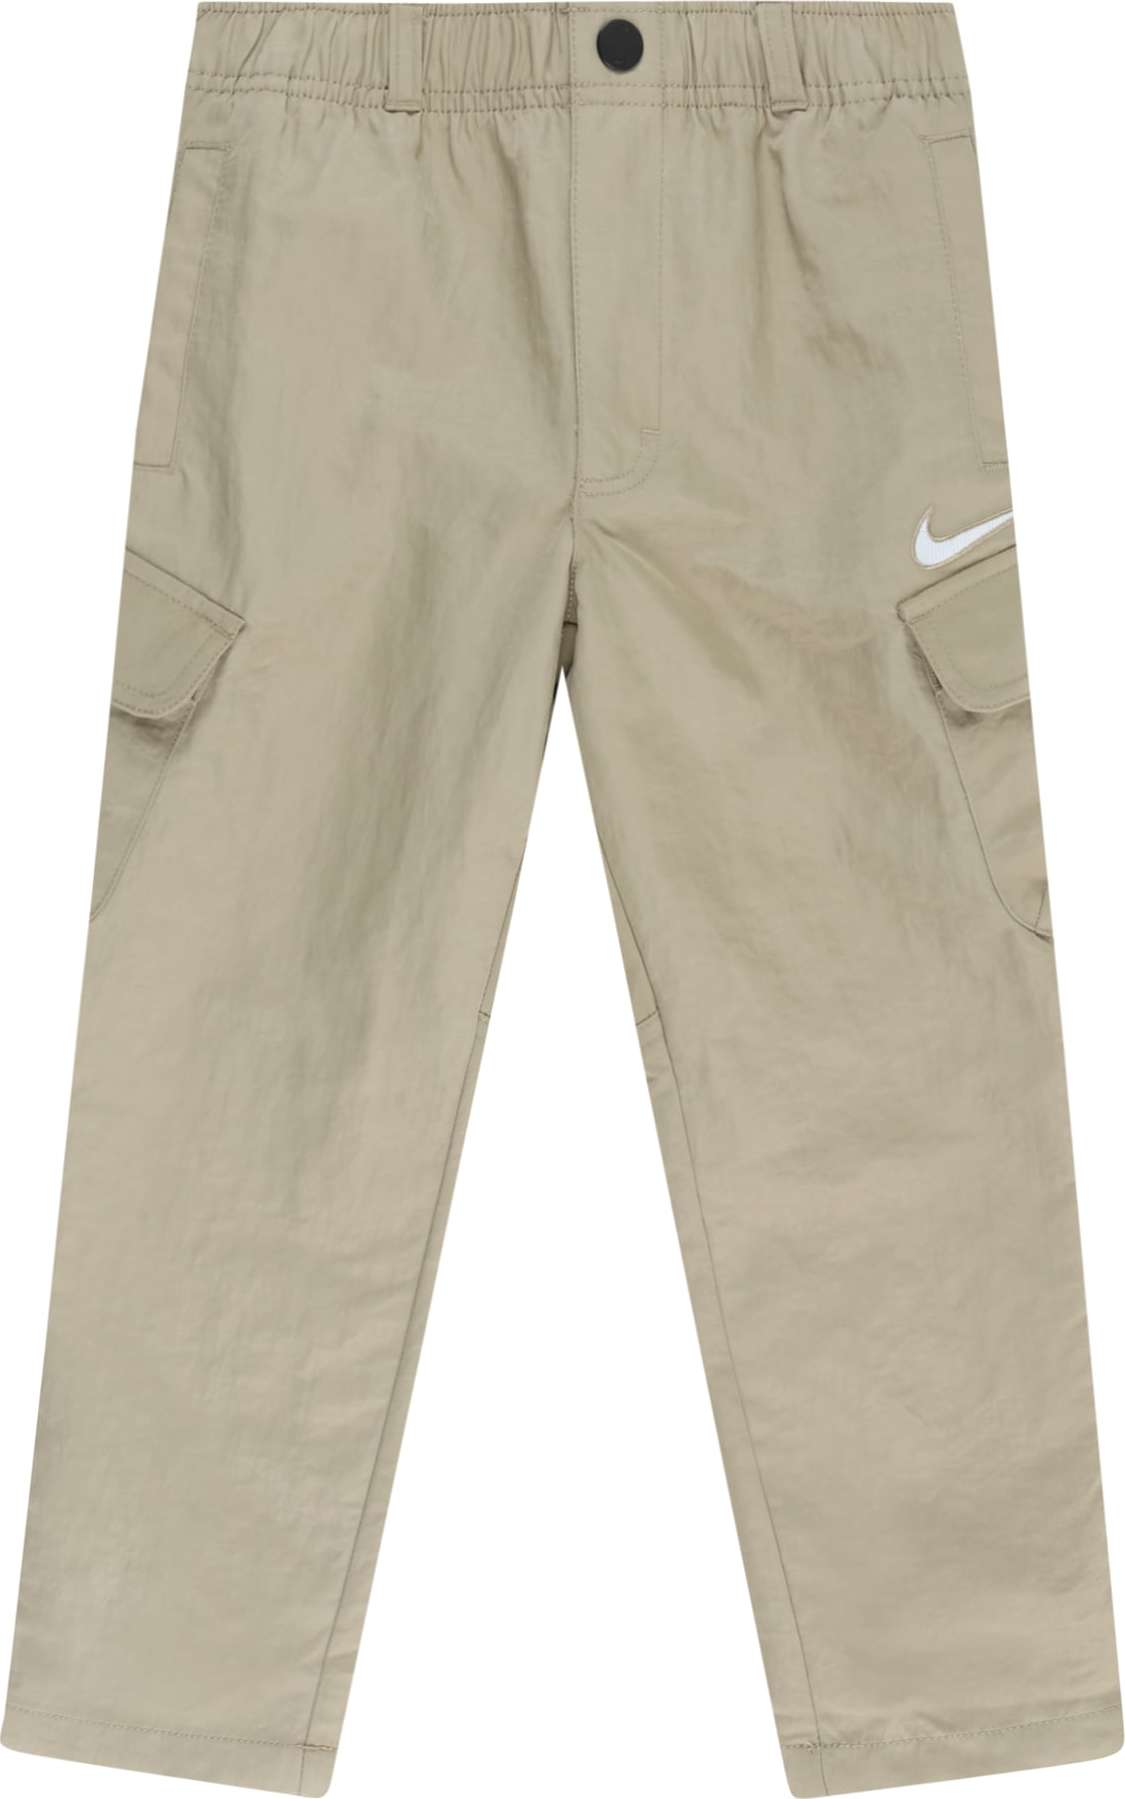 Kalhoty Nike Sportswear khaki